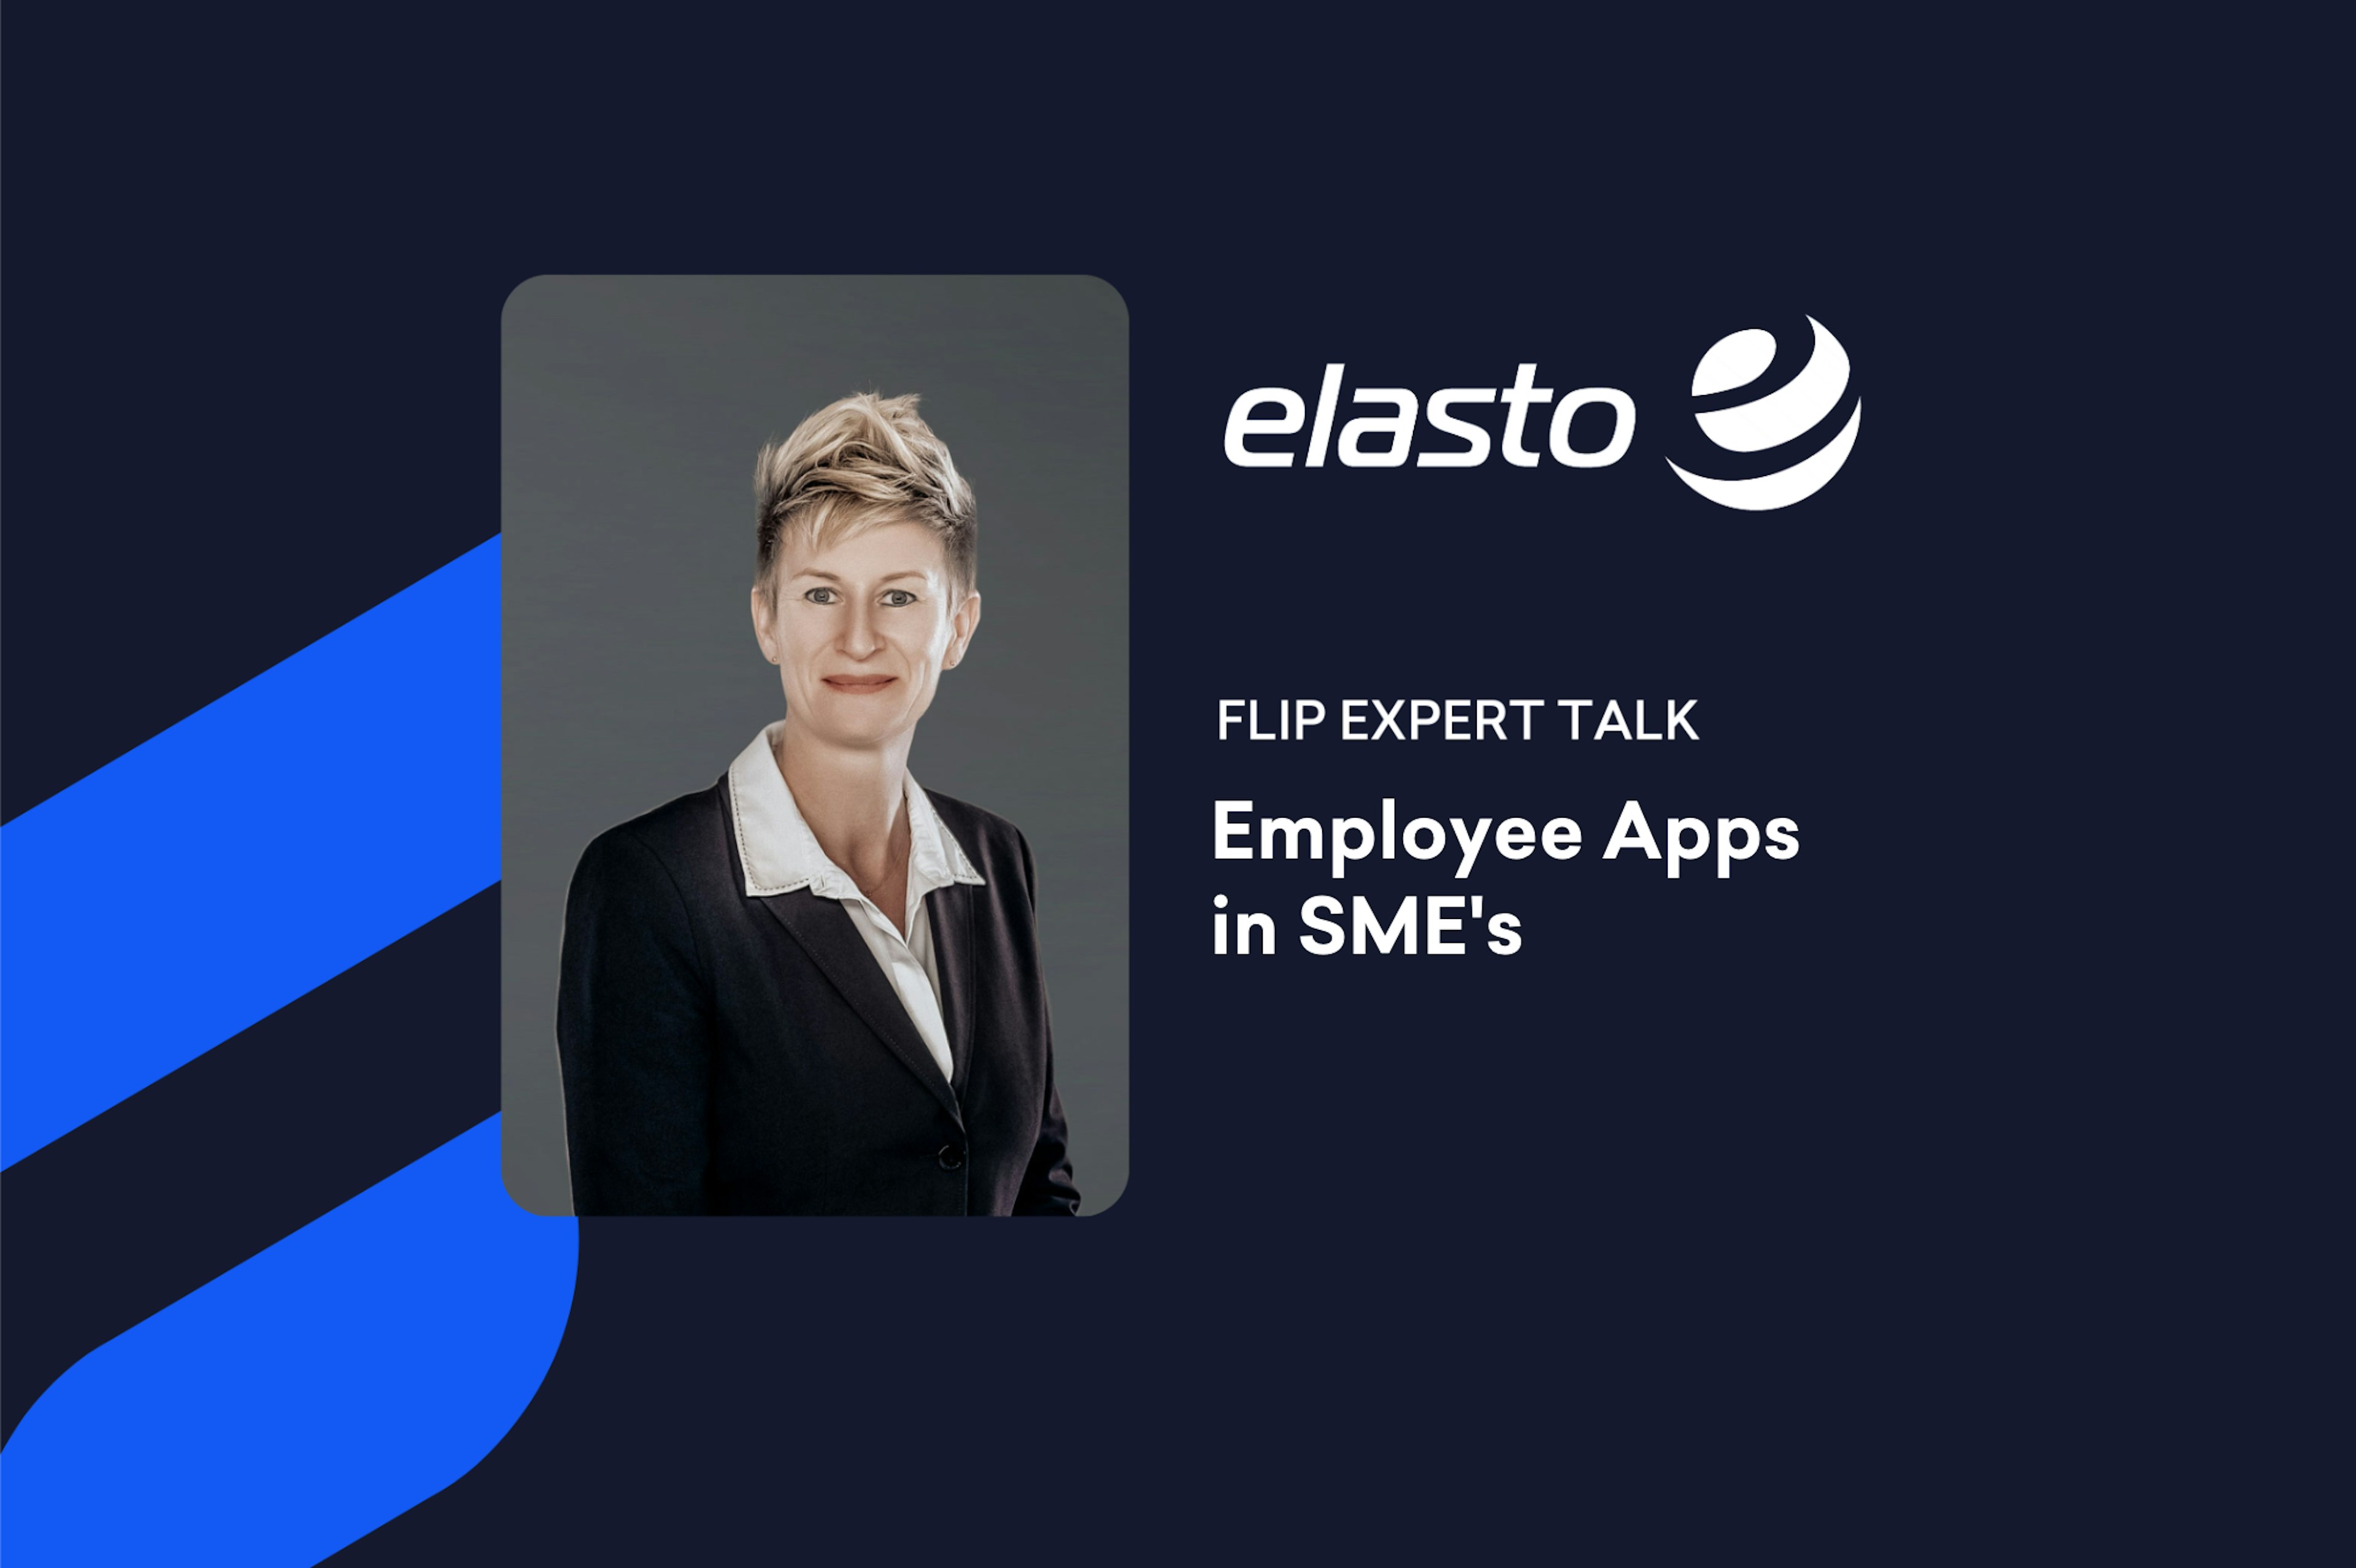 Ellen Scheibl, Head of Marketing, elasto